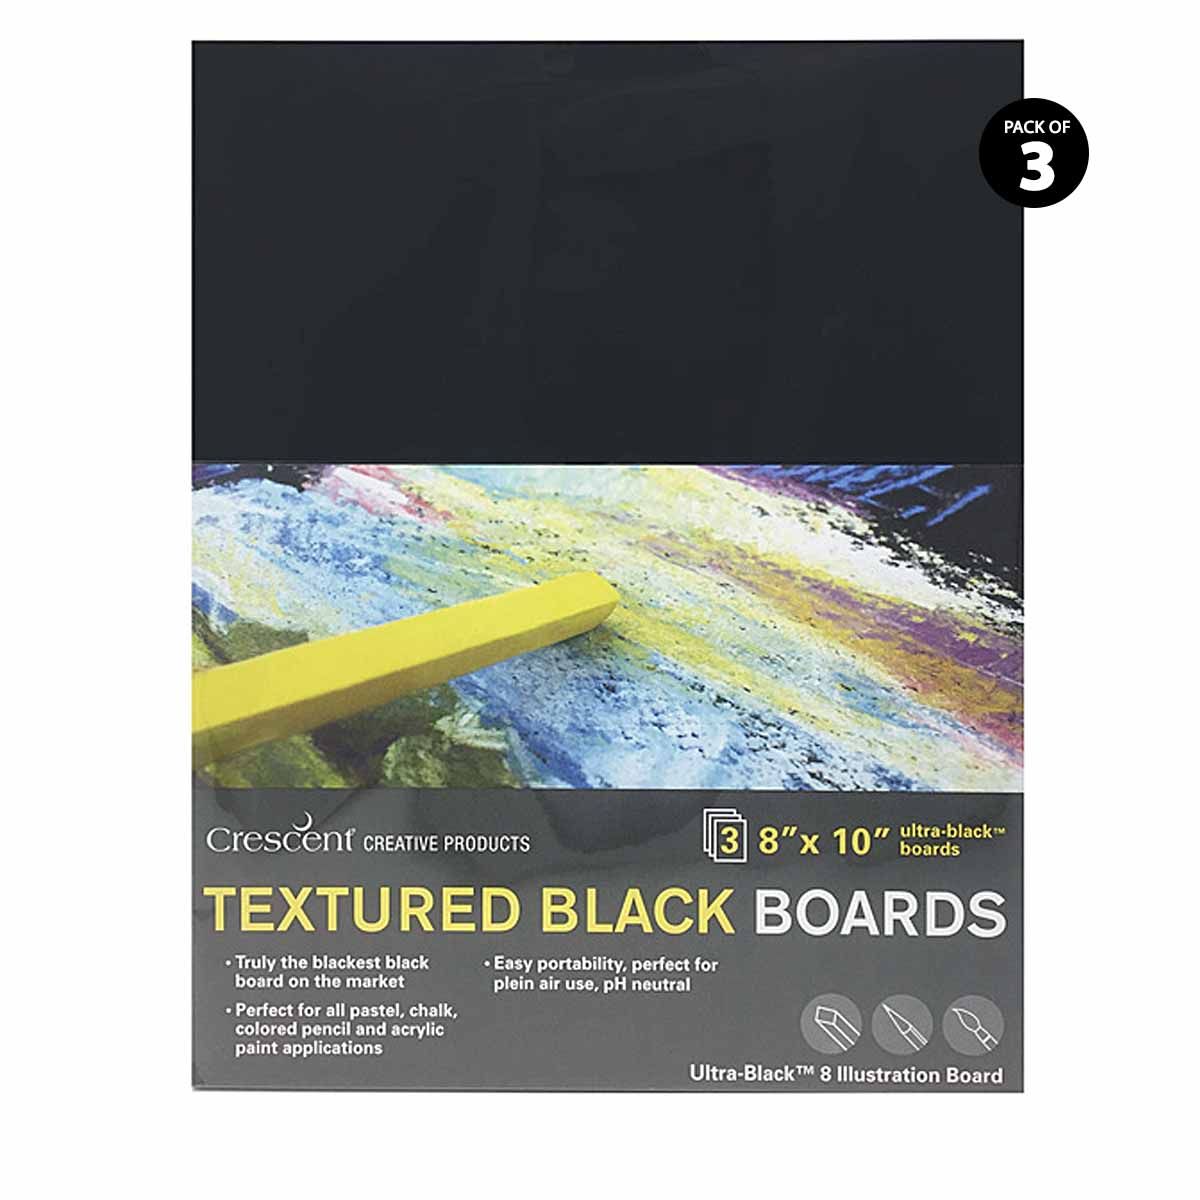 Blackest black board on the market